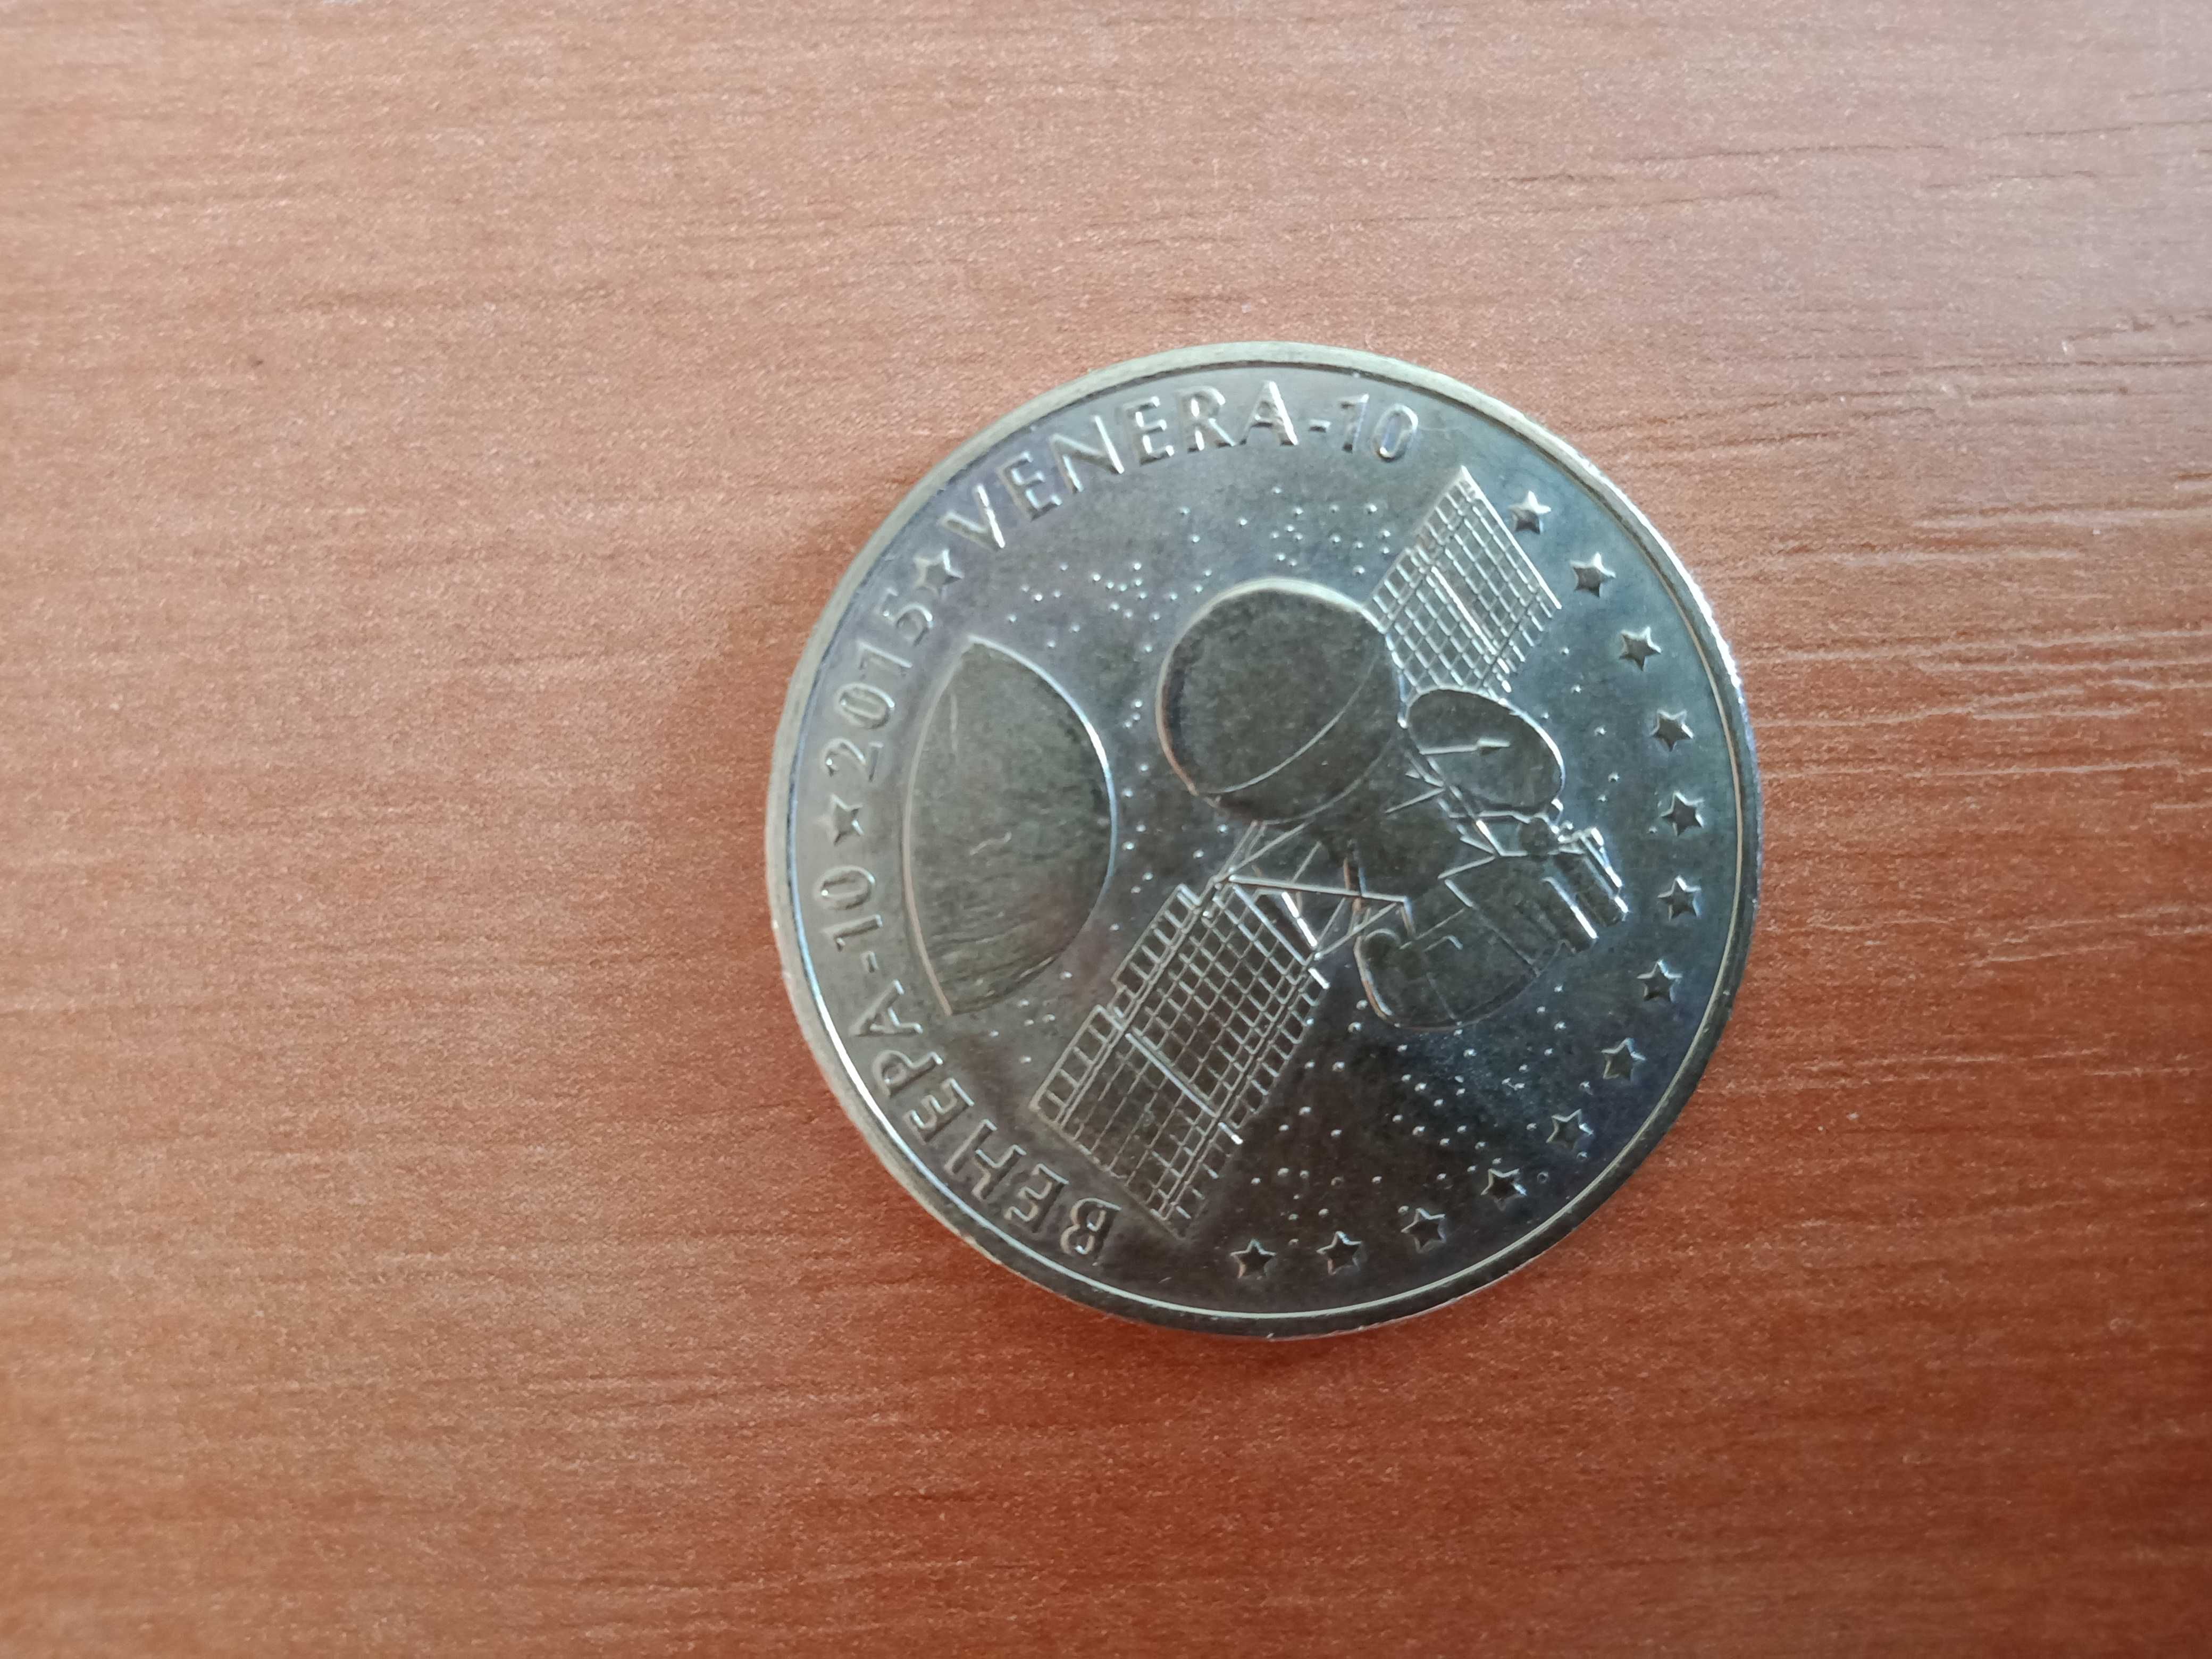 монета достоинством 50 тенге, венера-10 космос 2015 год.